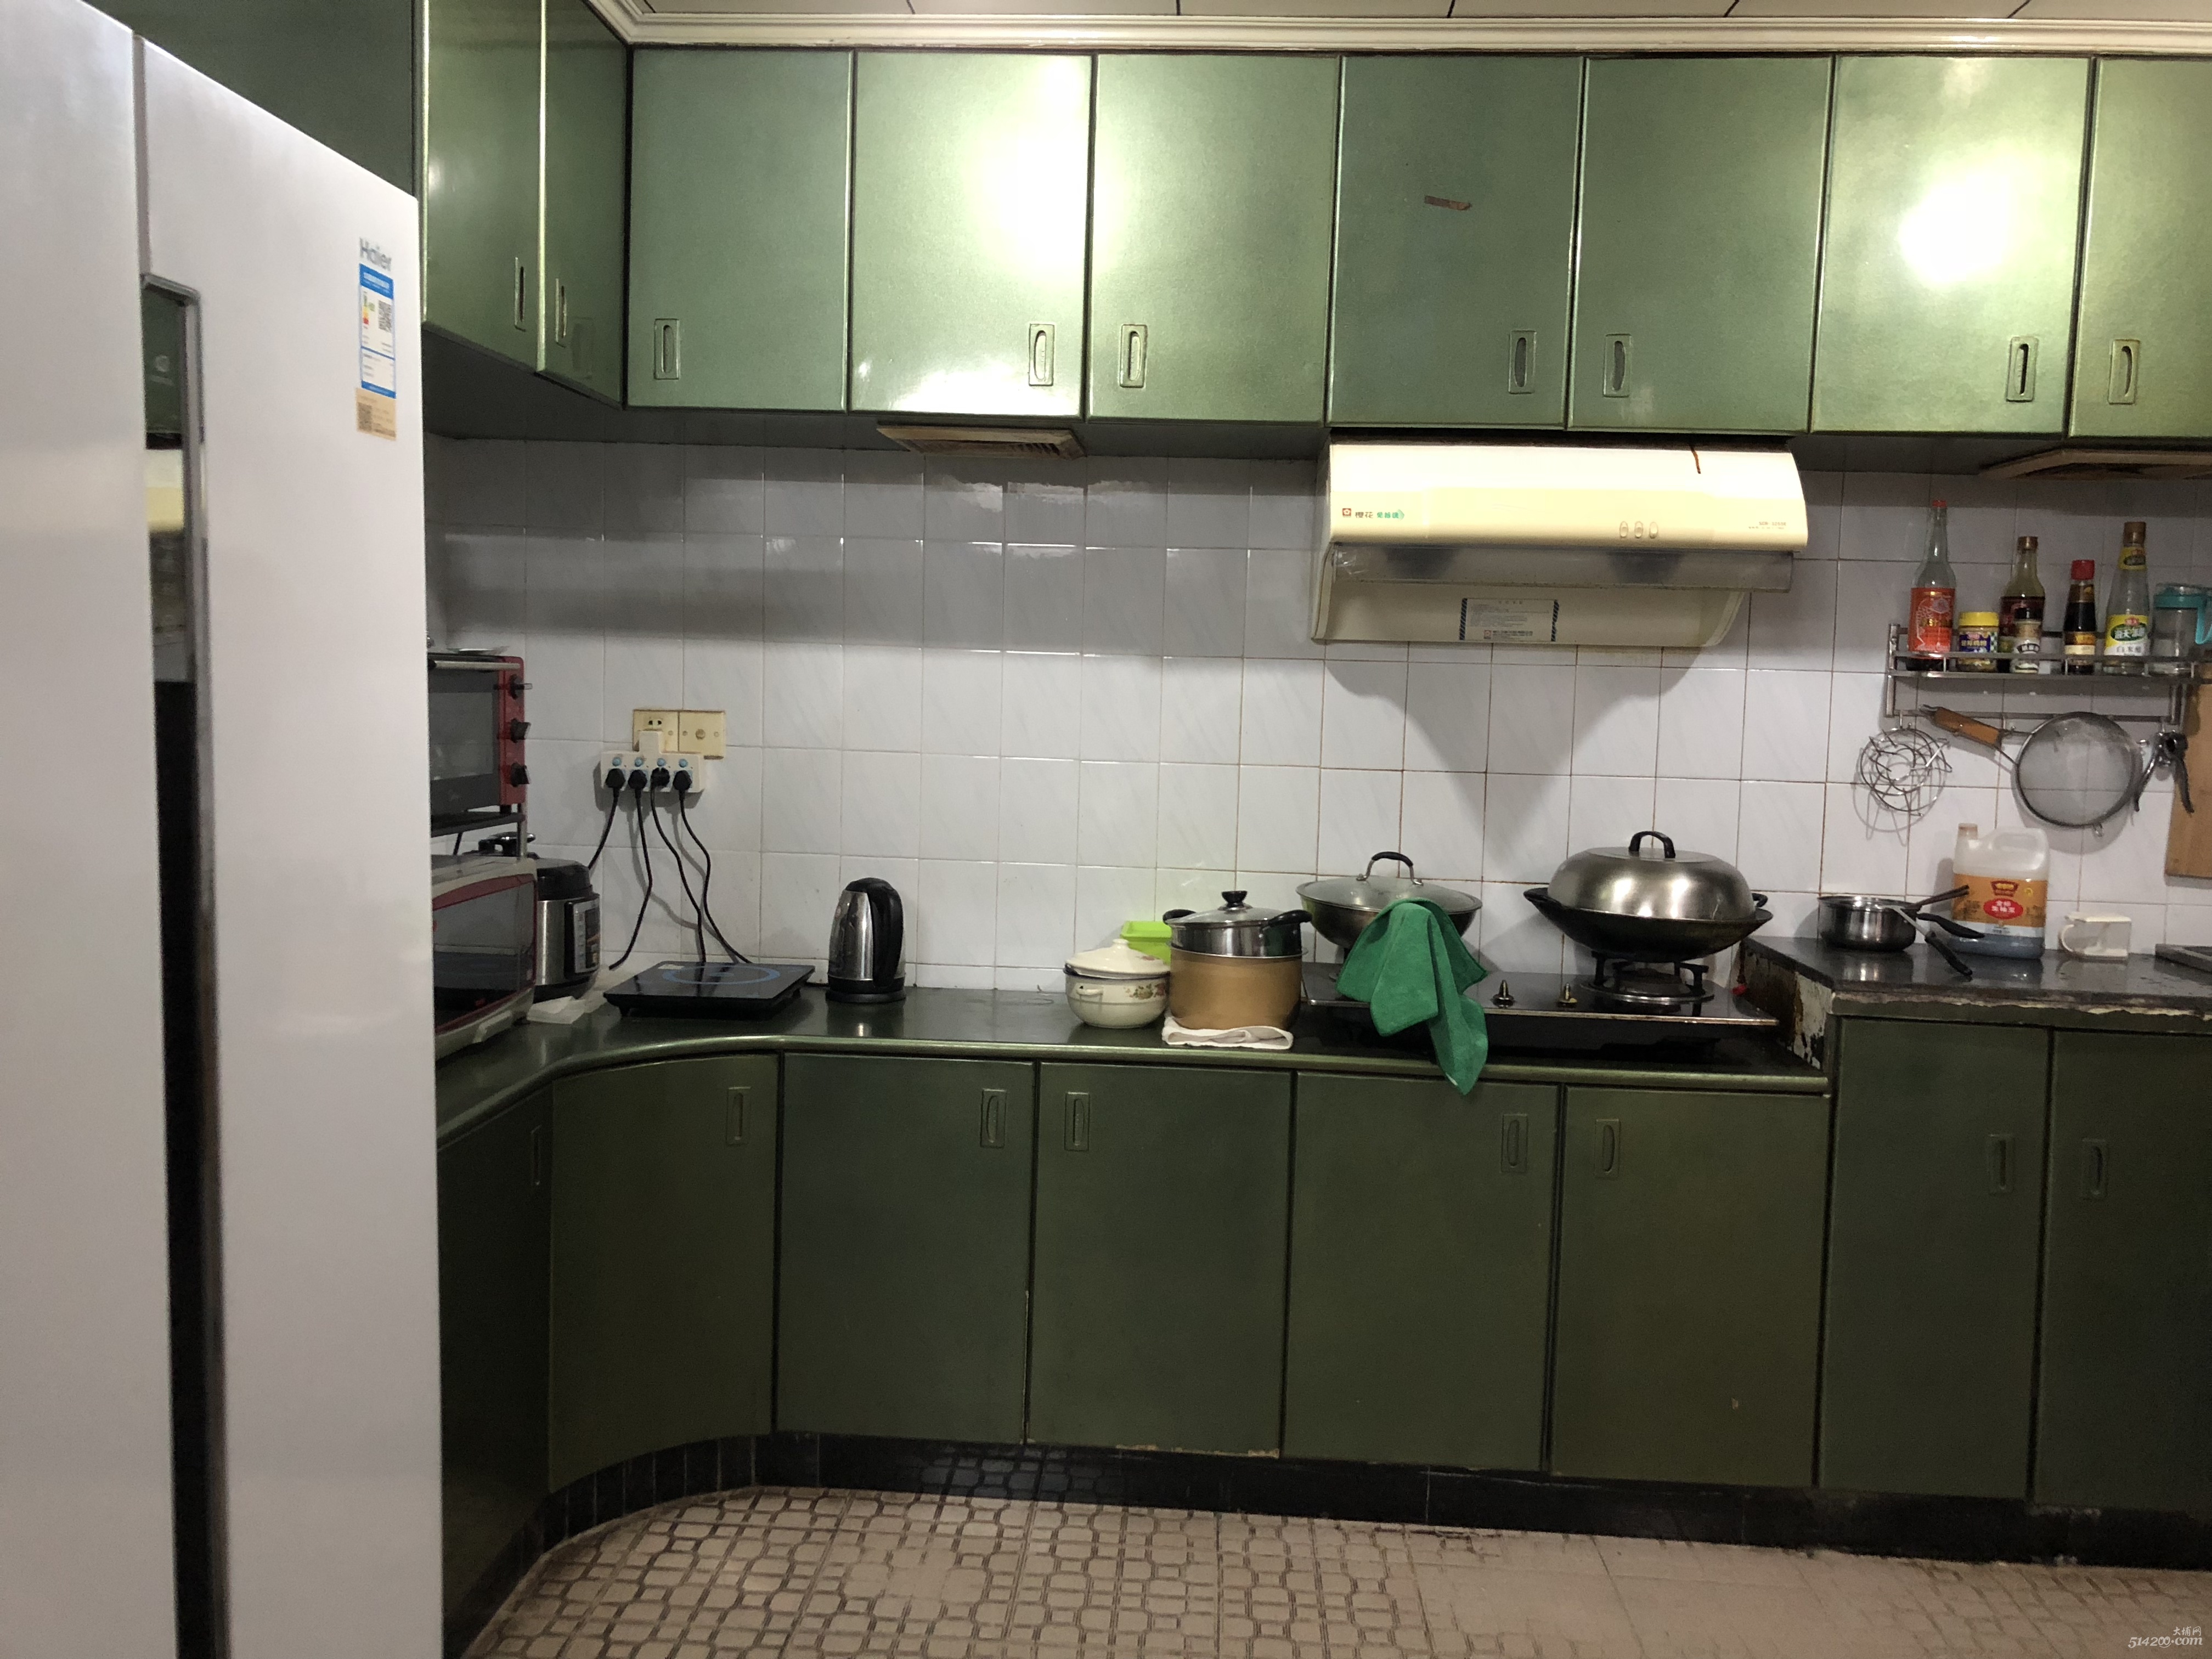 厨房宽敞大冰箱、烤箱、微波炉、电磁炉均齐全